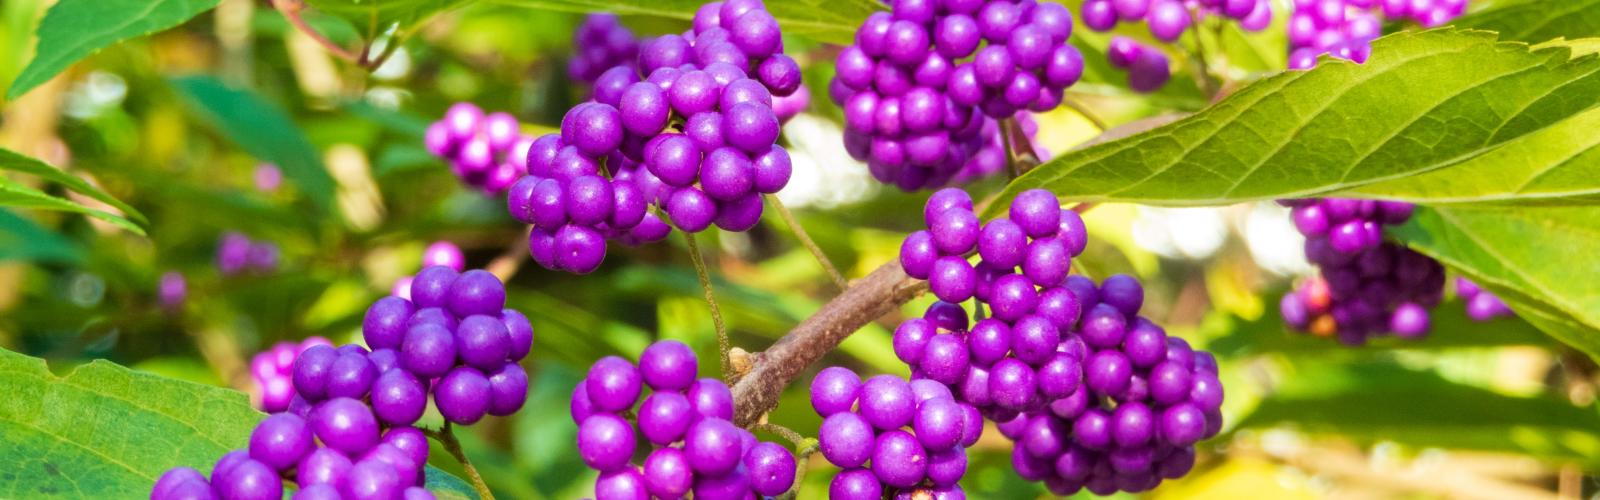 Callicarpa japonica : La Beauté Vivace des Baies Violettes